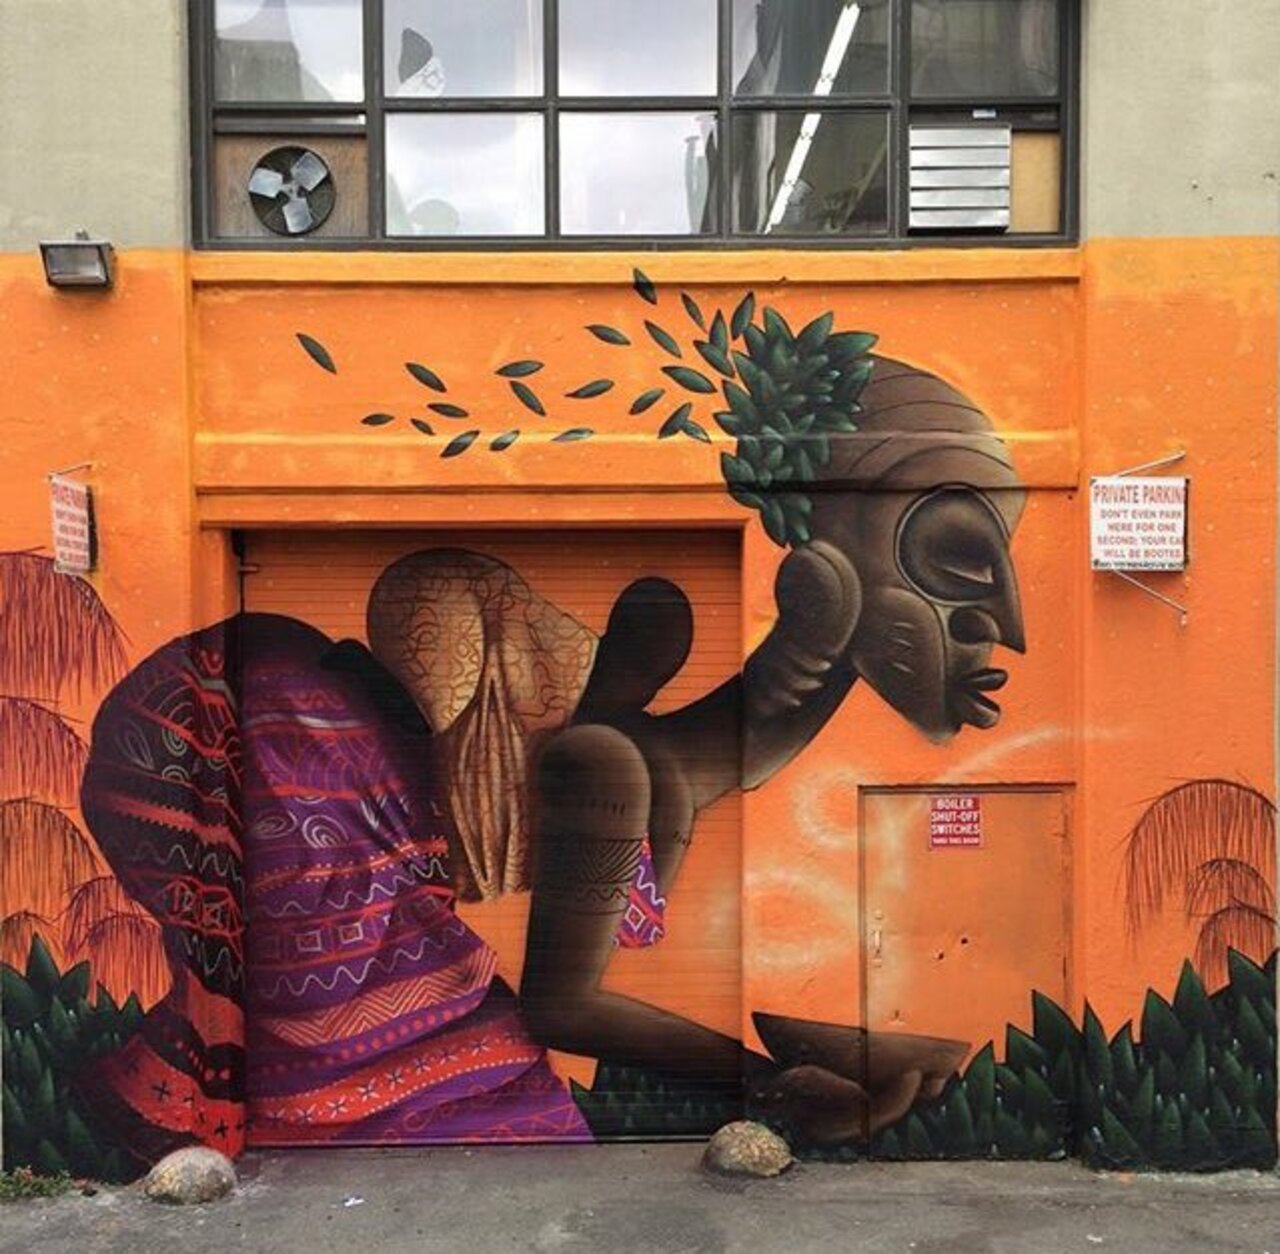 RT @ALivestreaming: New Street Art by Alexandre Keto in NYC 

#art #graffiti #mural #streetart https://t.co/i4v3eswVnD